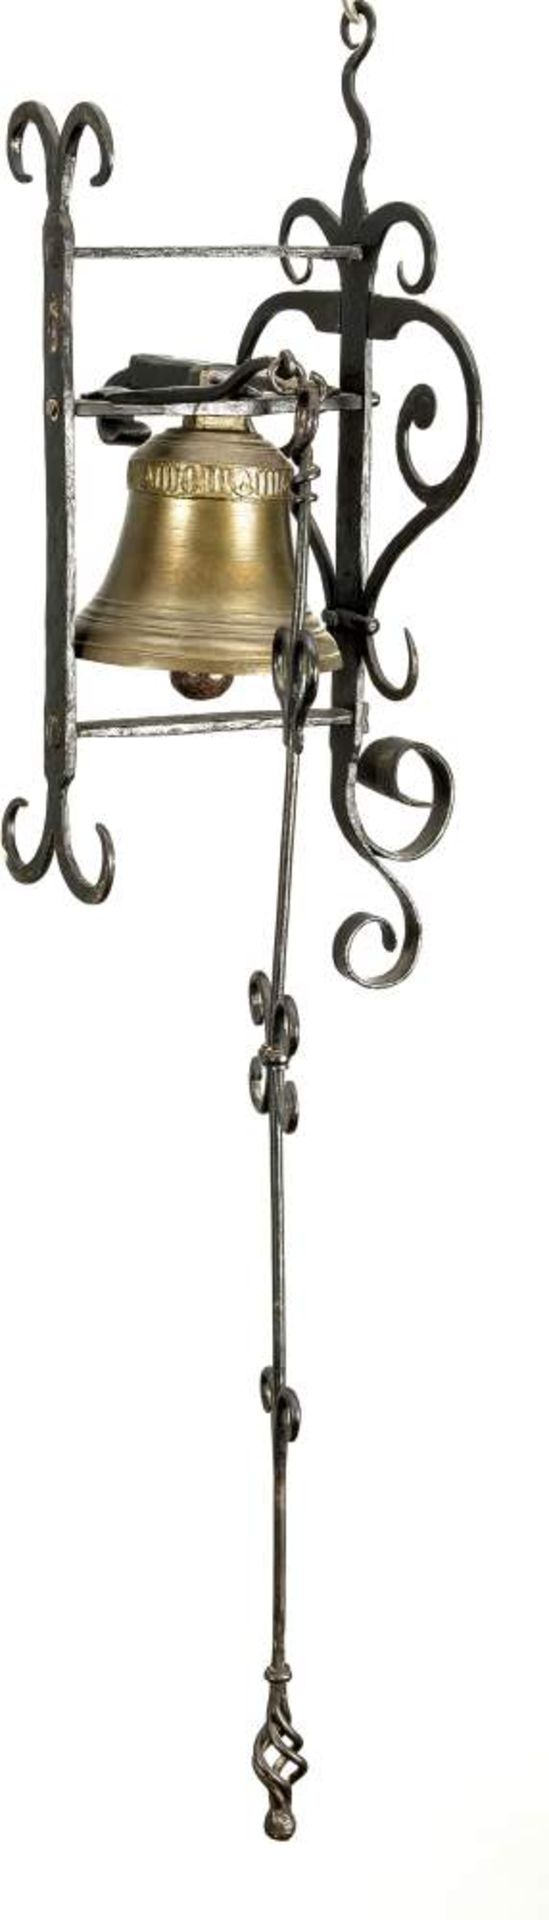 Türglocke, 1. H. 20. Jh., Messingglocke mit schmiedeeiserner Aufhängung und Zugstange,Gesamtmaße